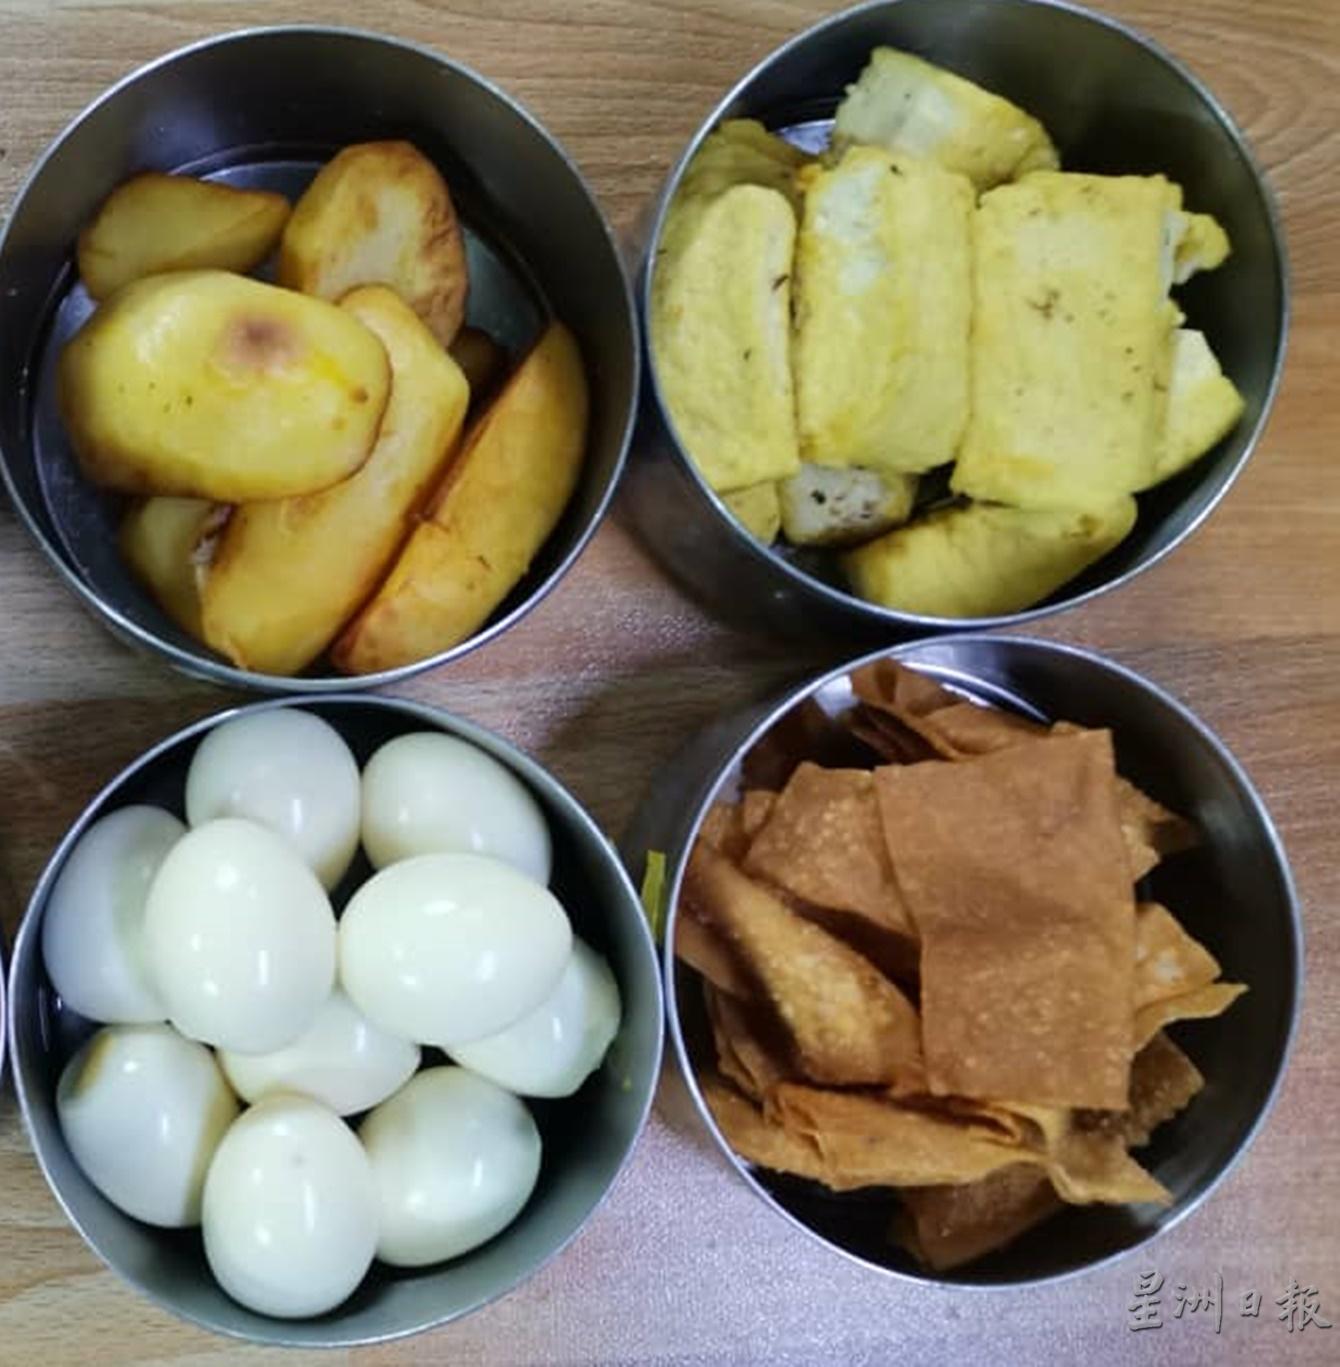 素吉灵面的主要馅料有鸡蛋、豆干及马铃薯等。

